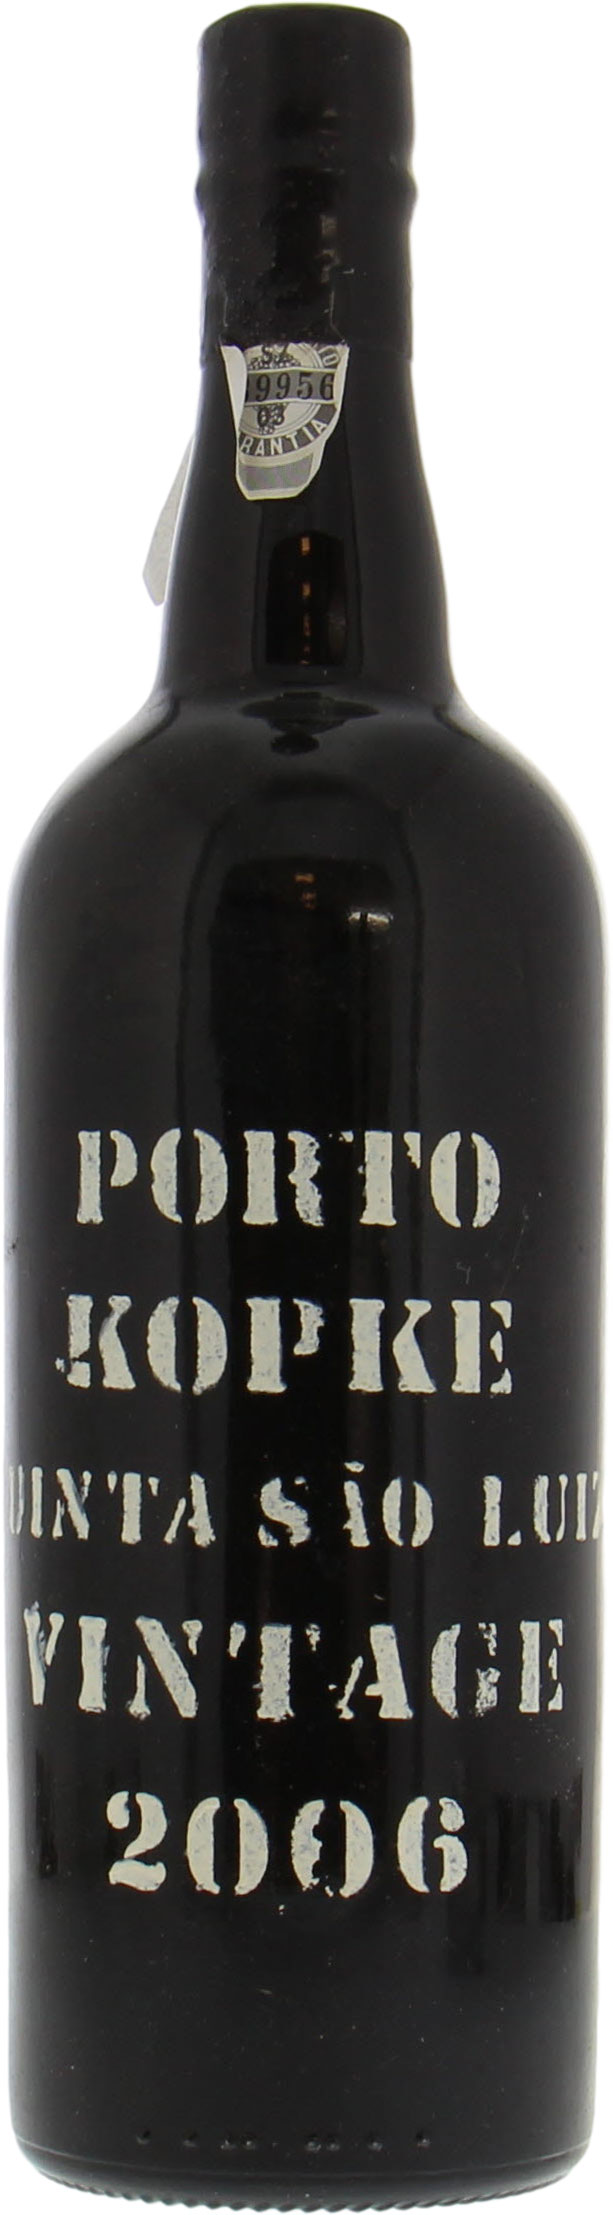 Kopke - Vintage Port 2006